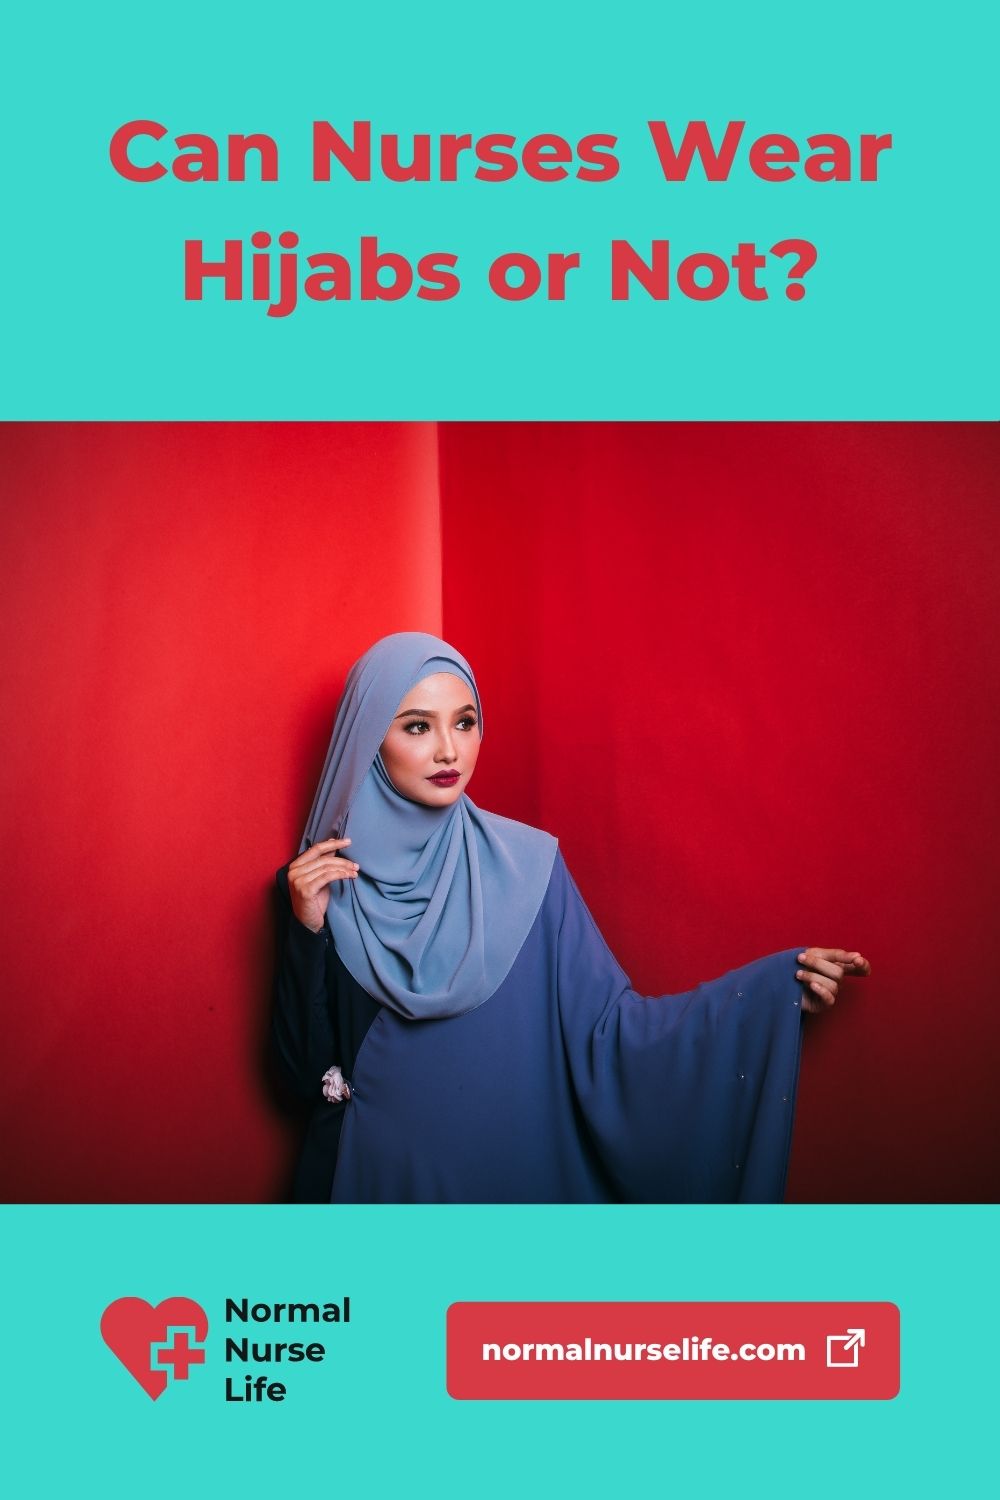 Can nurses wear hijabs